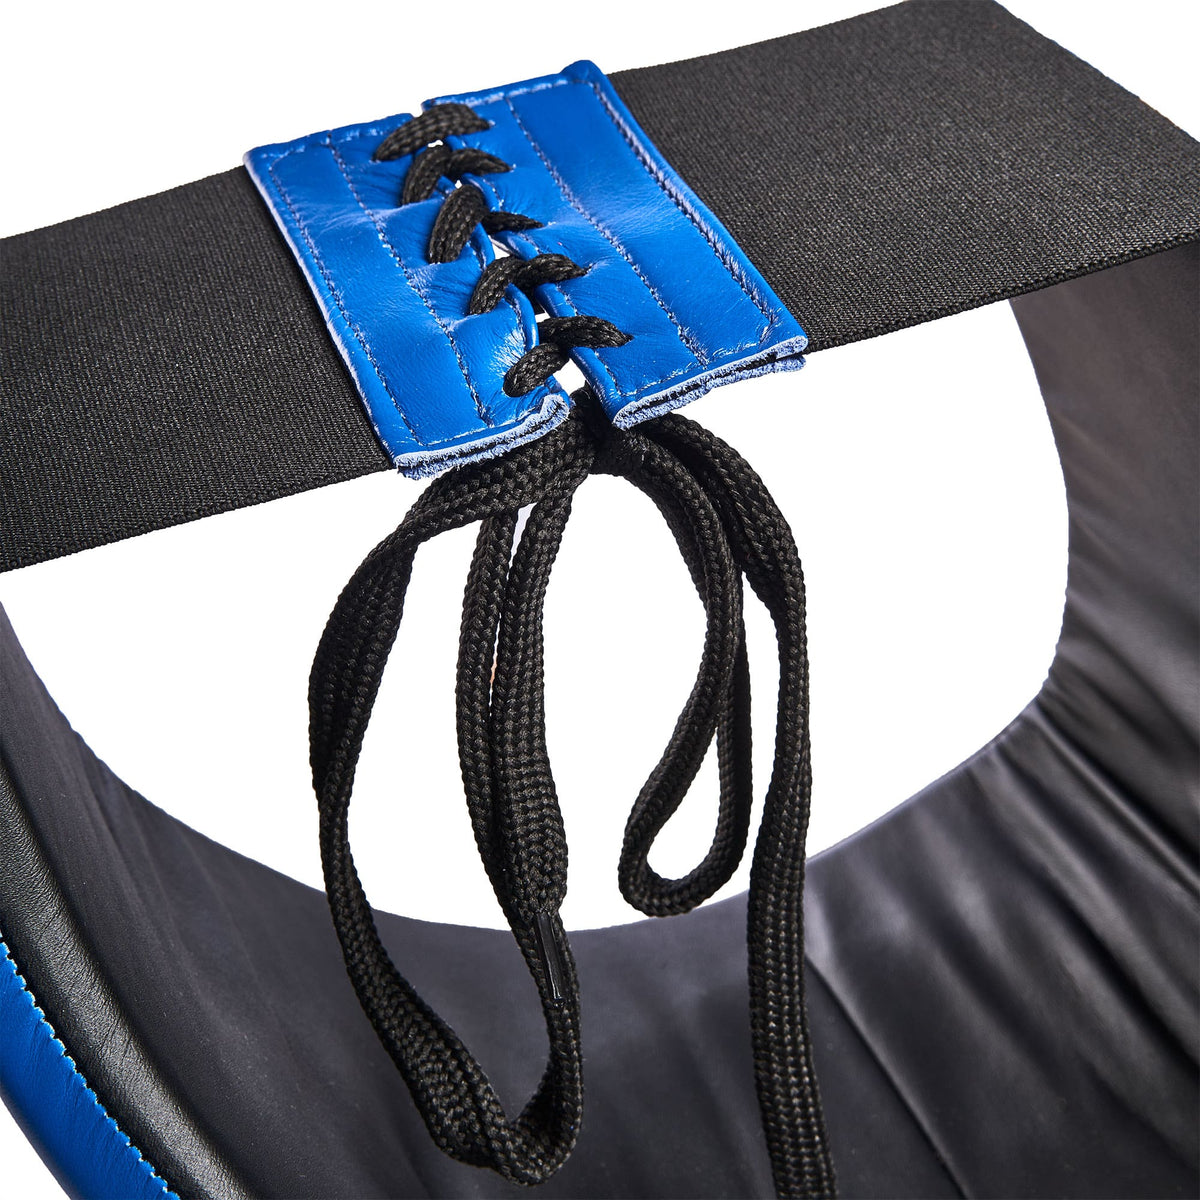 Nahaufnahme der Schnürung am Tiefschutz, befestigt an einem elastischen Gummiband, ermöglicht individuelle Größeneinstellung für eine personalisierte und sichere Passform.